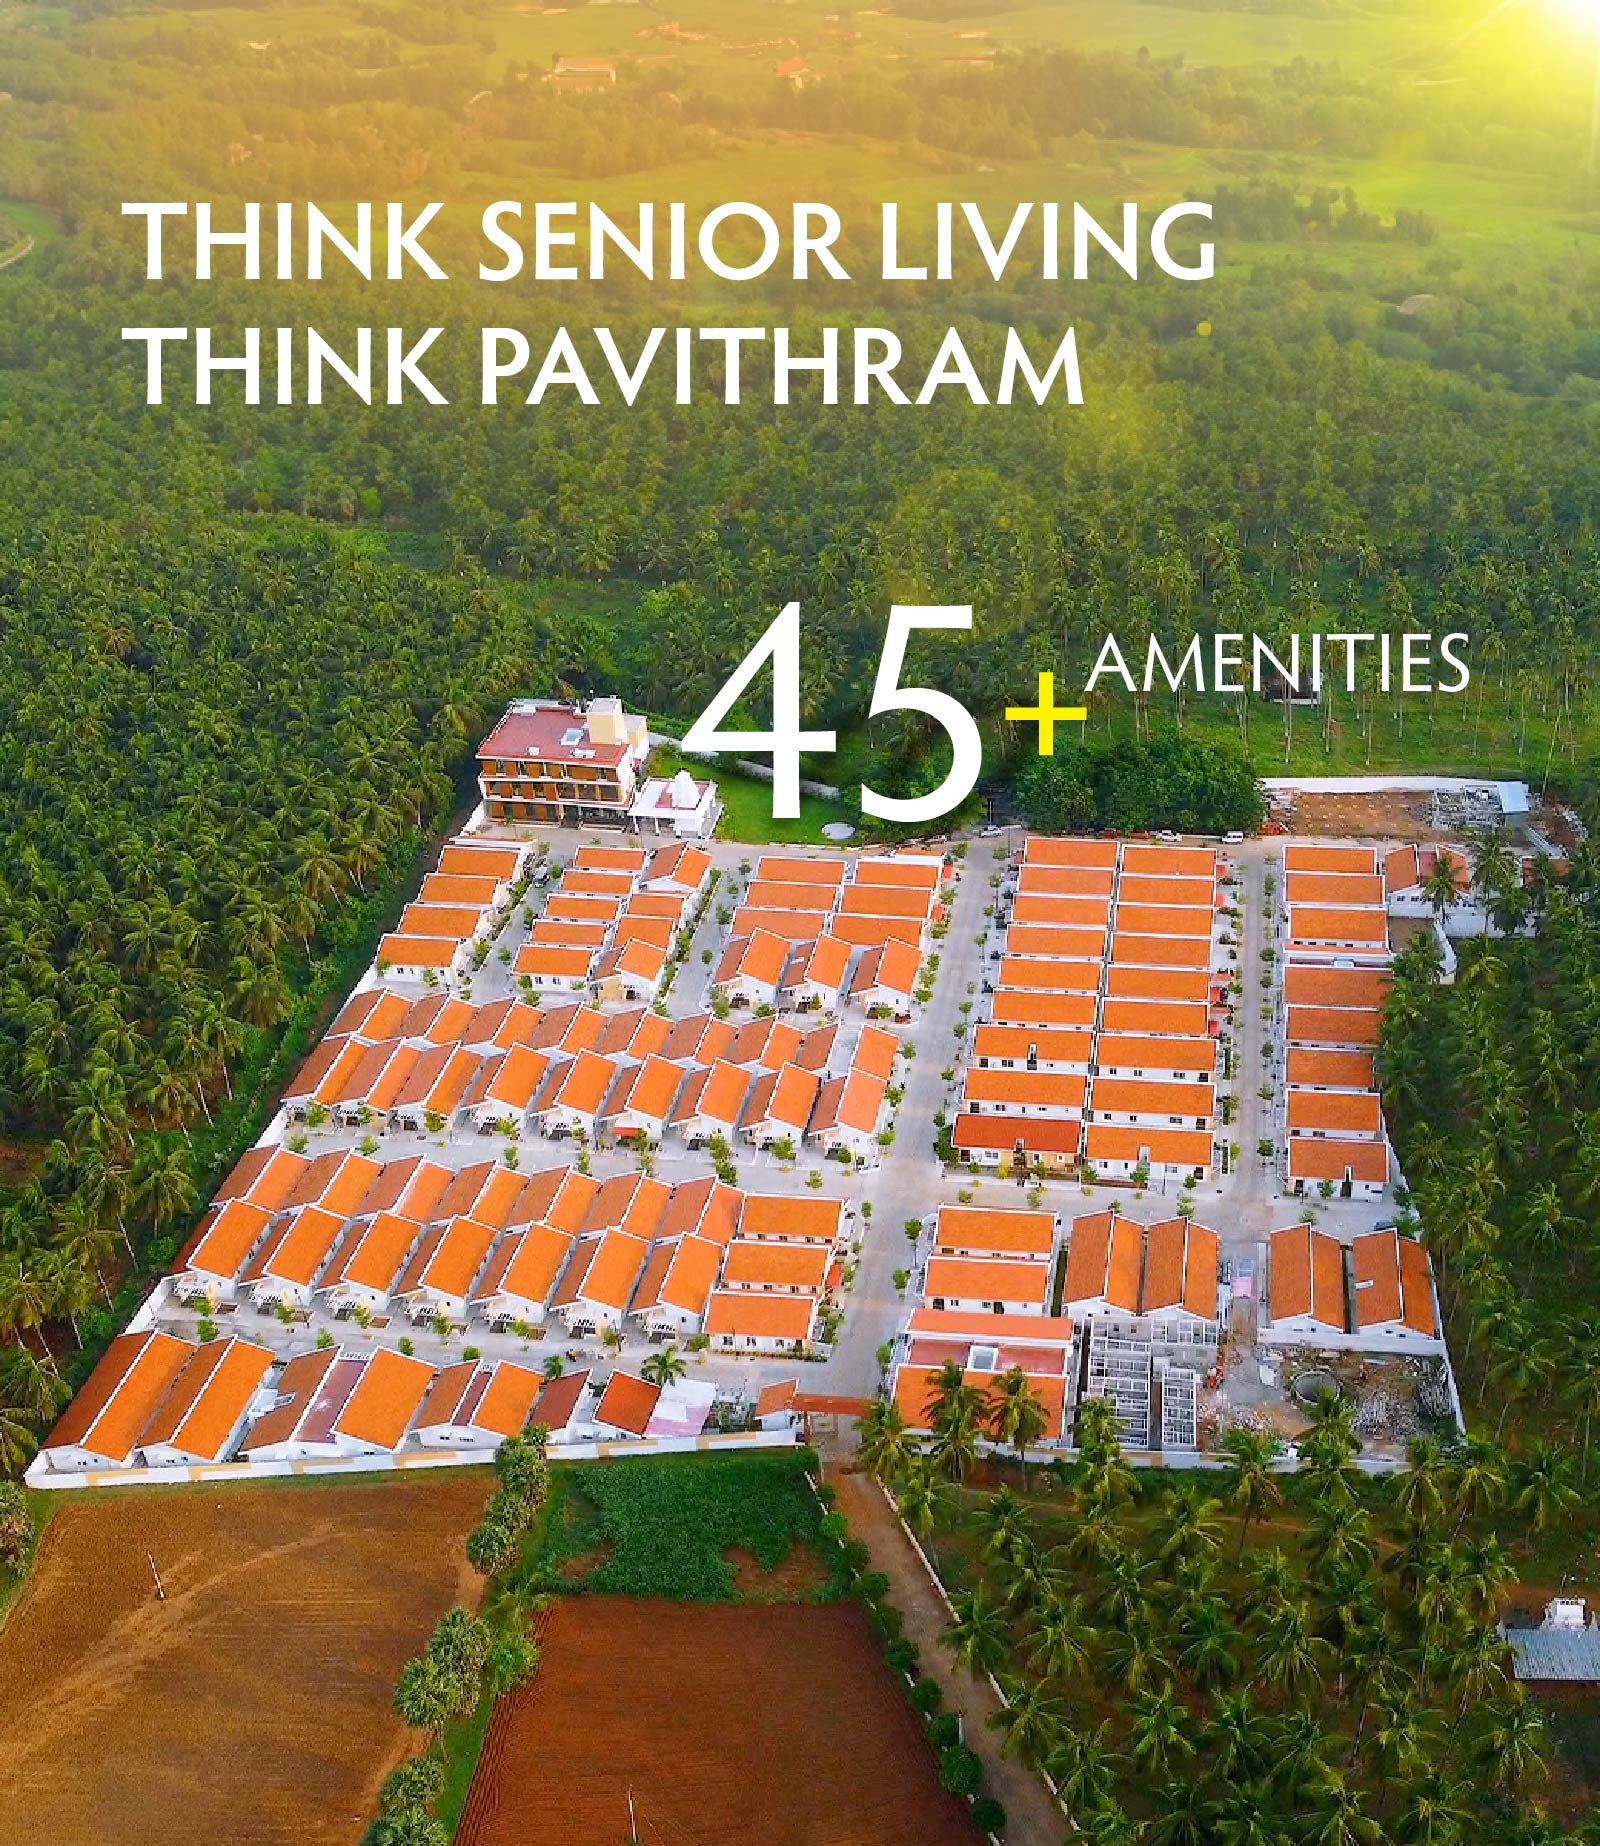 Pavithram Senior Living